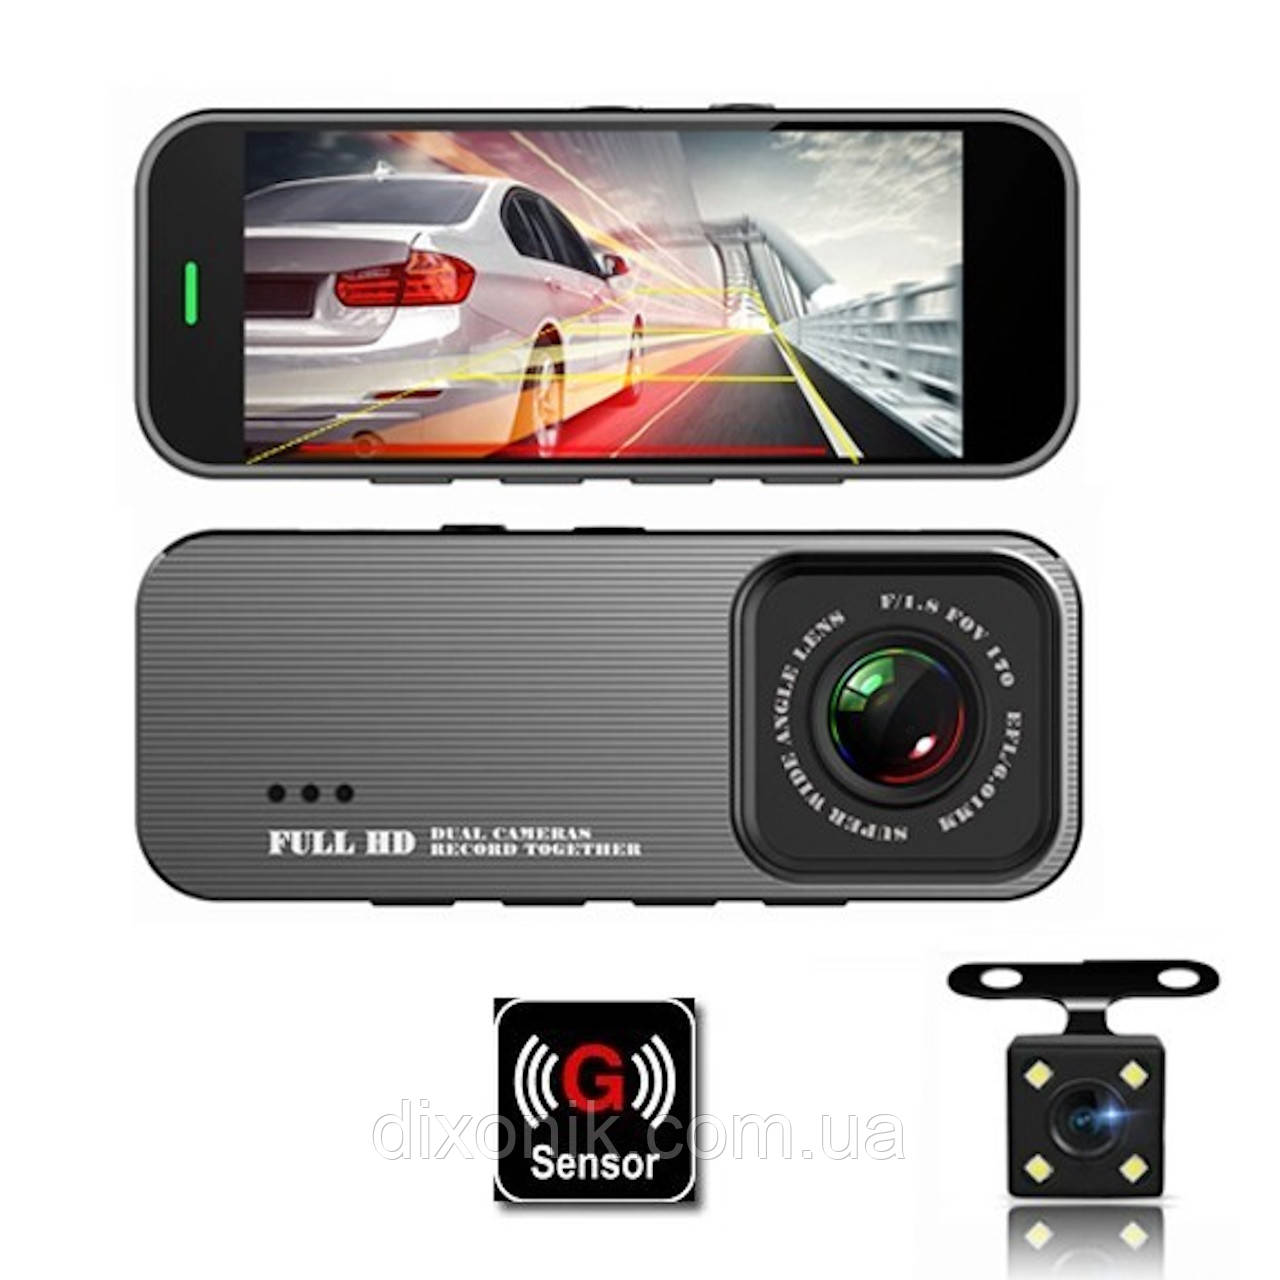 Автомобільний відеореєстратор з двома камерами Car DVR 701 відео реєстратор із екраном 3.19 дюйма